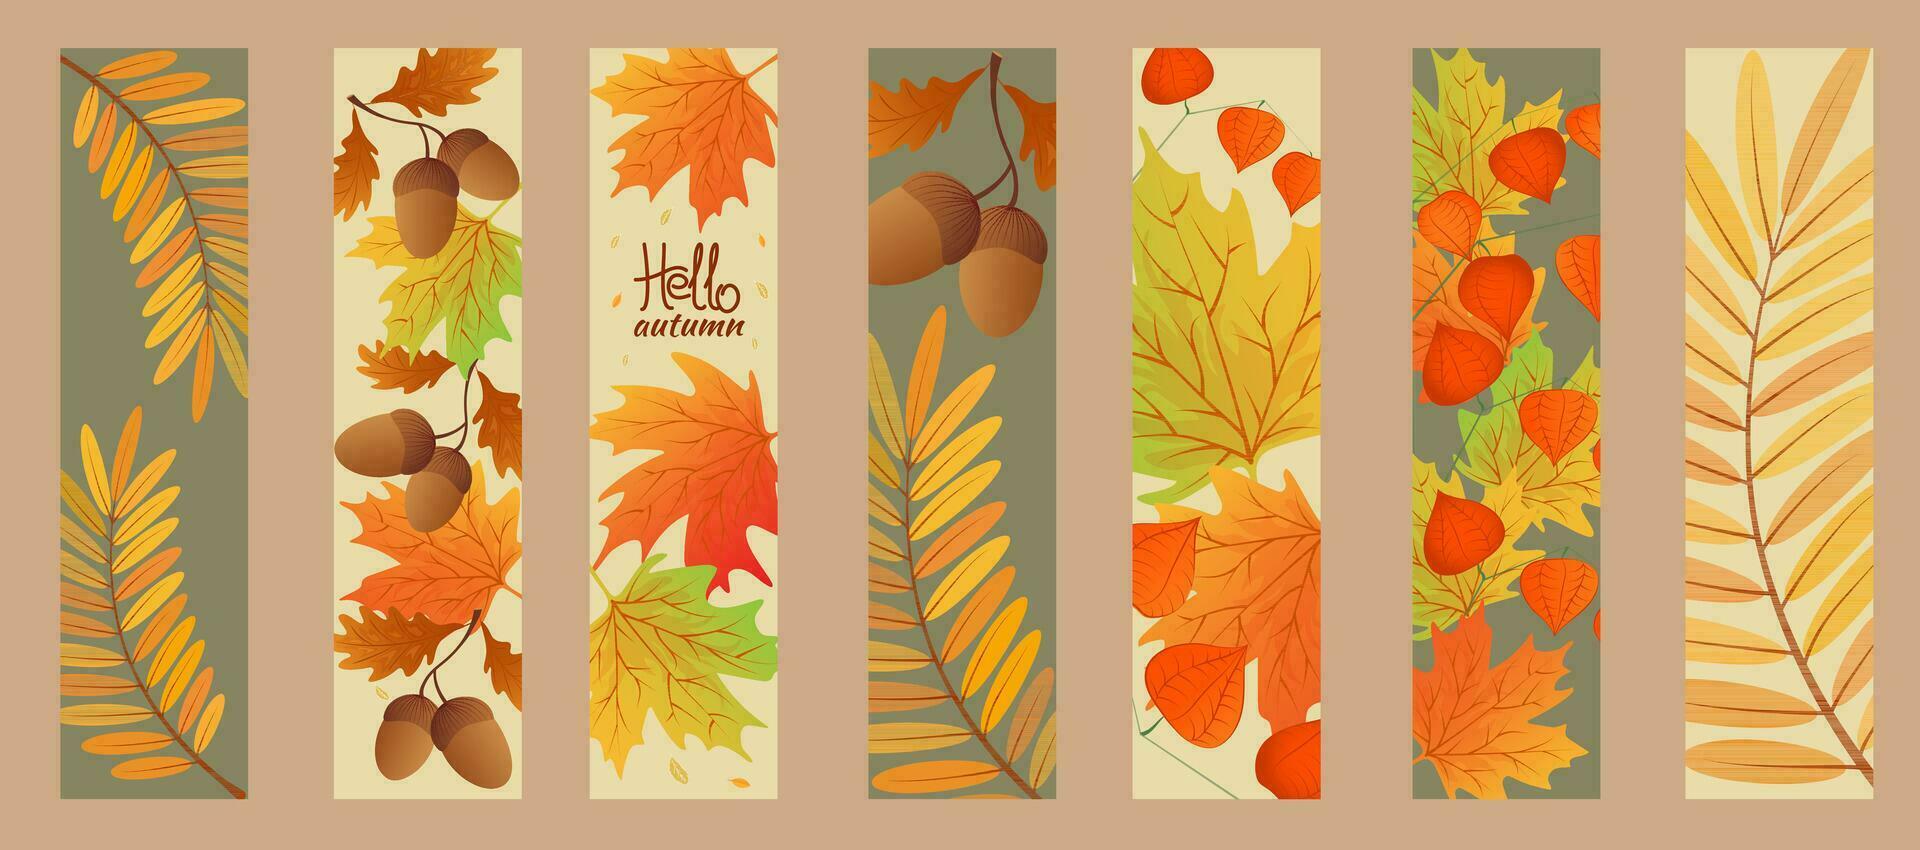 otoño rebaja bandera. Hola otoño. conjunto otoño marcadores arce hojas, serbal hojas con rama de physalis, roble hoja, bellotas. vector